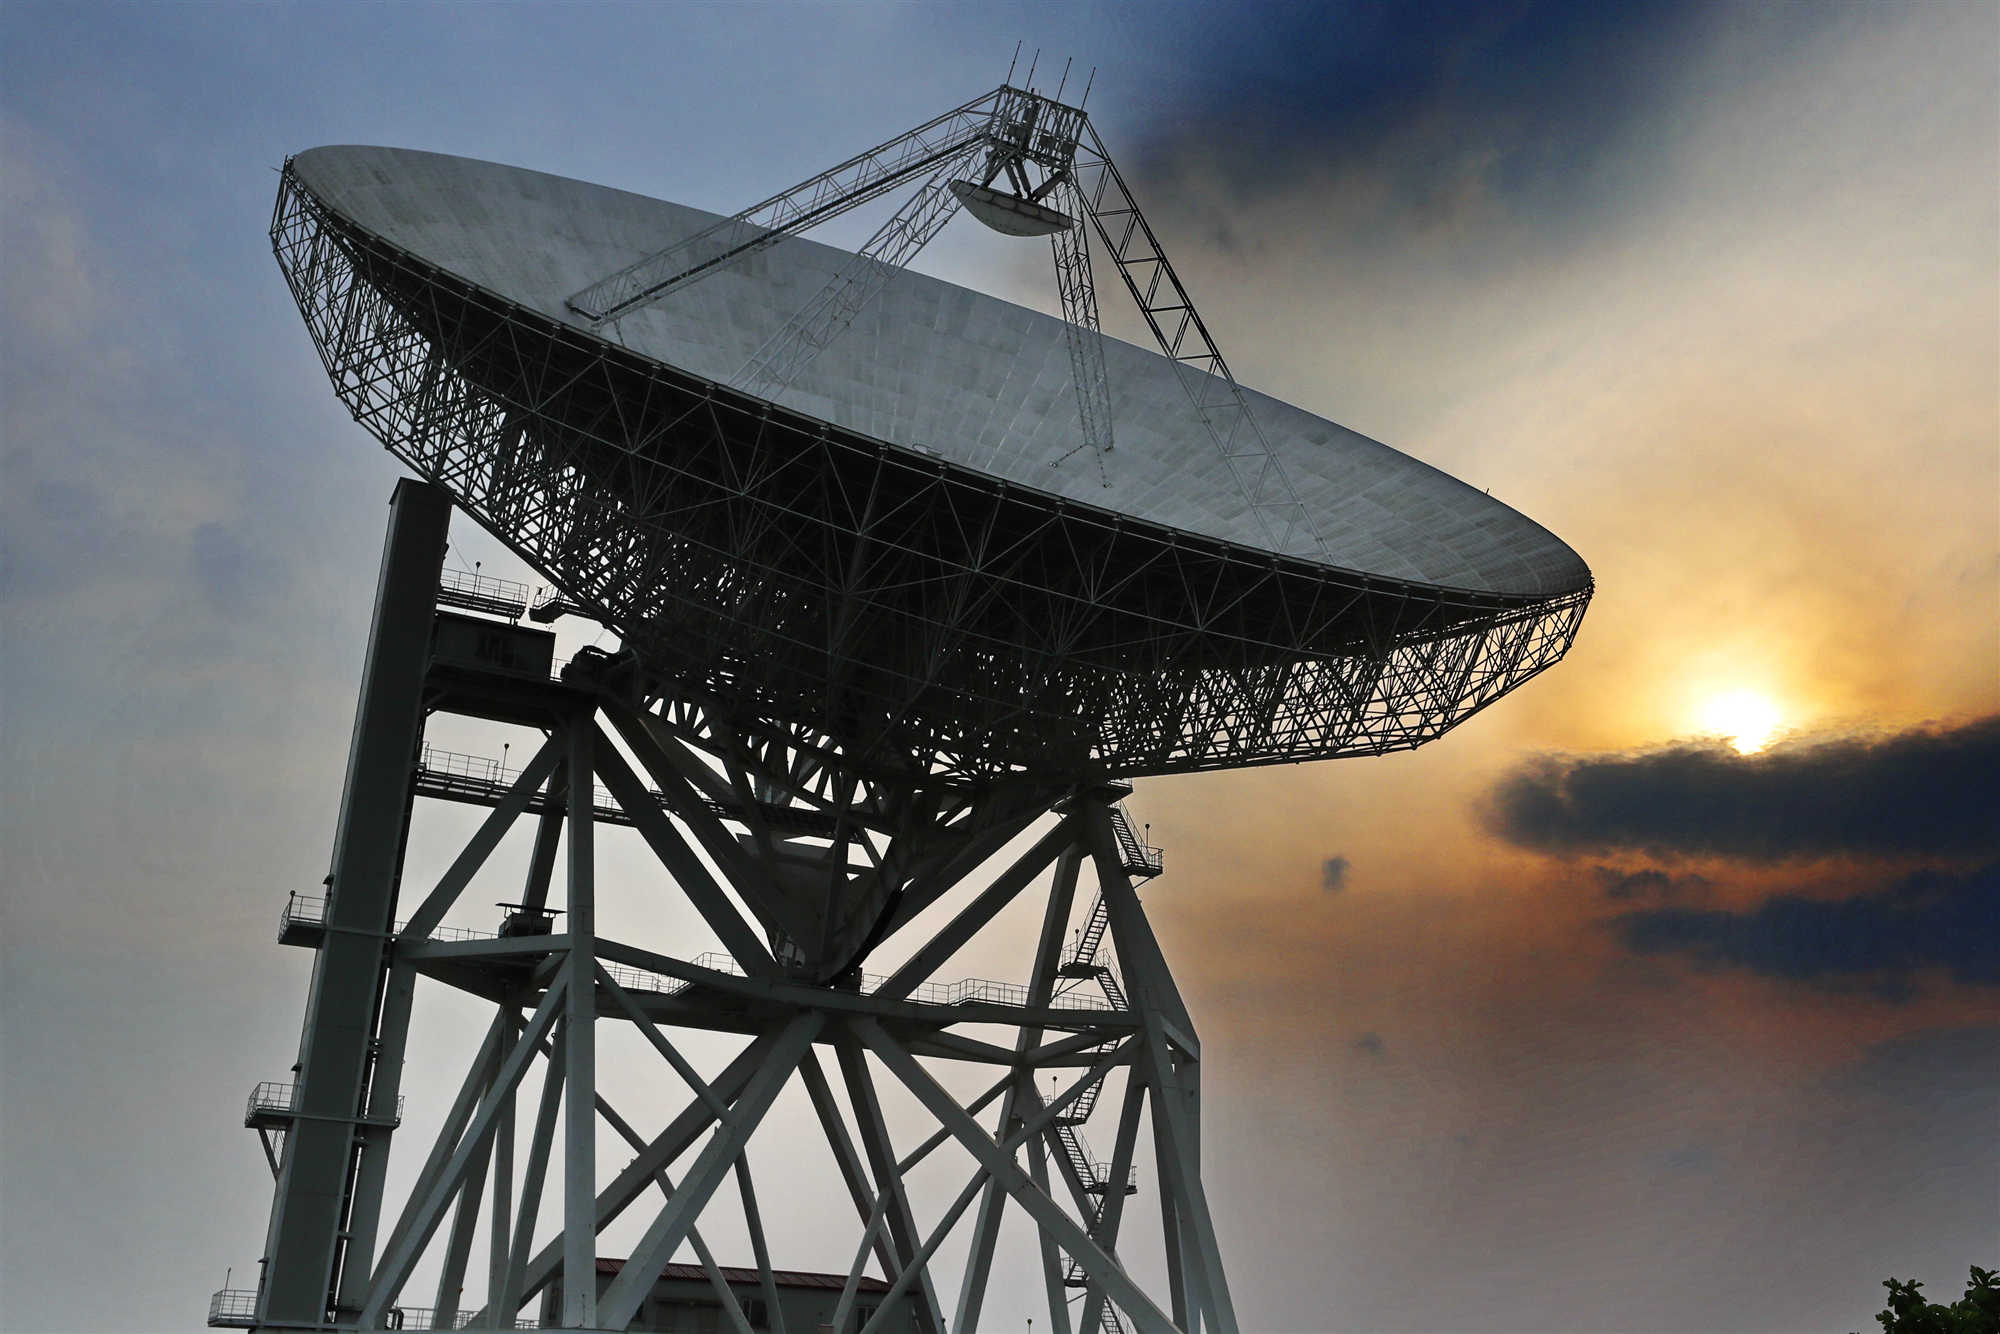 上海科技奖 揭秘特等奖天马望远镜:守护"嫦娥,探秘宇宙,它为科学